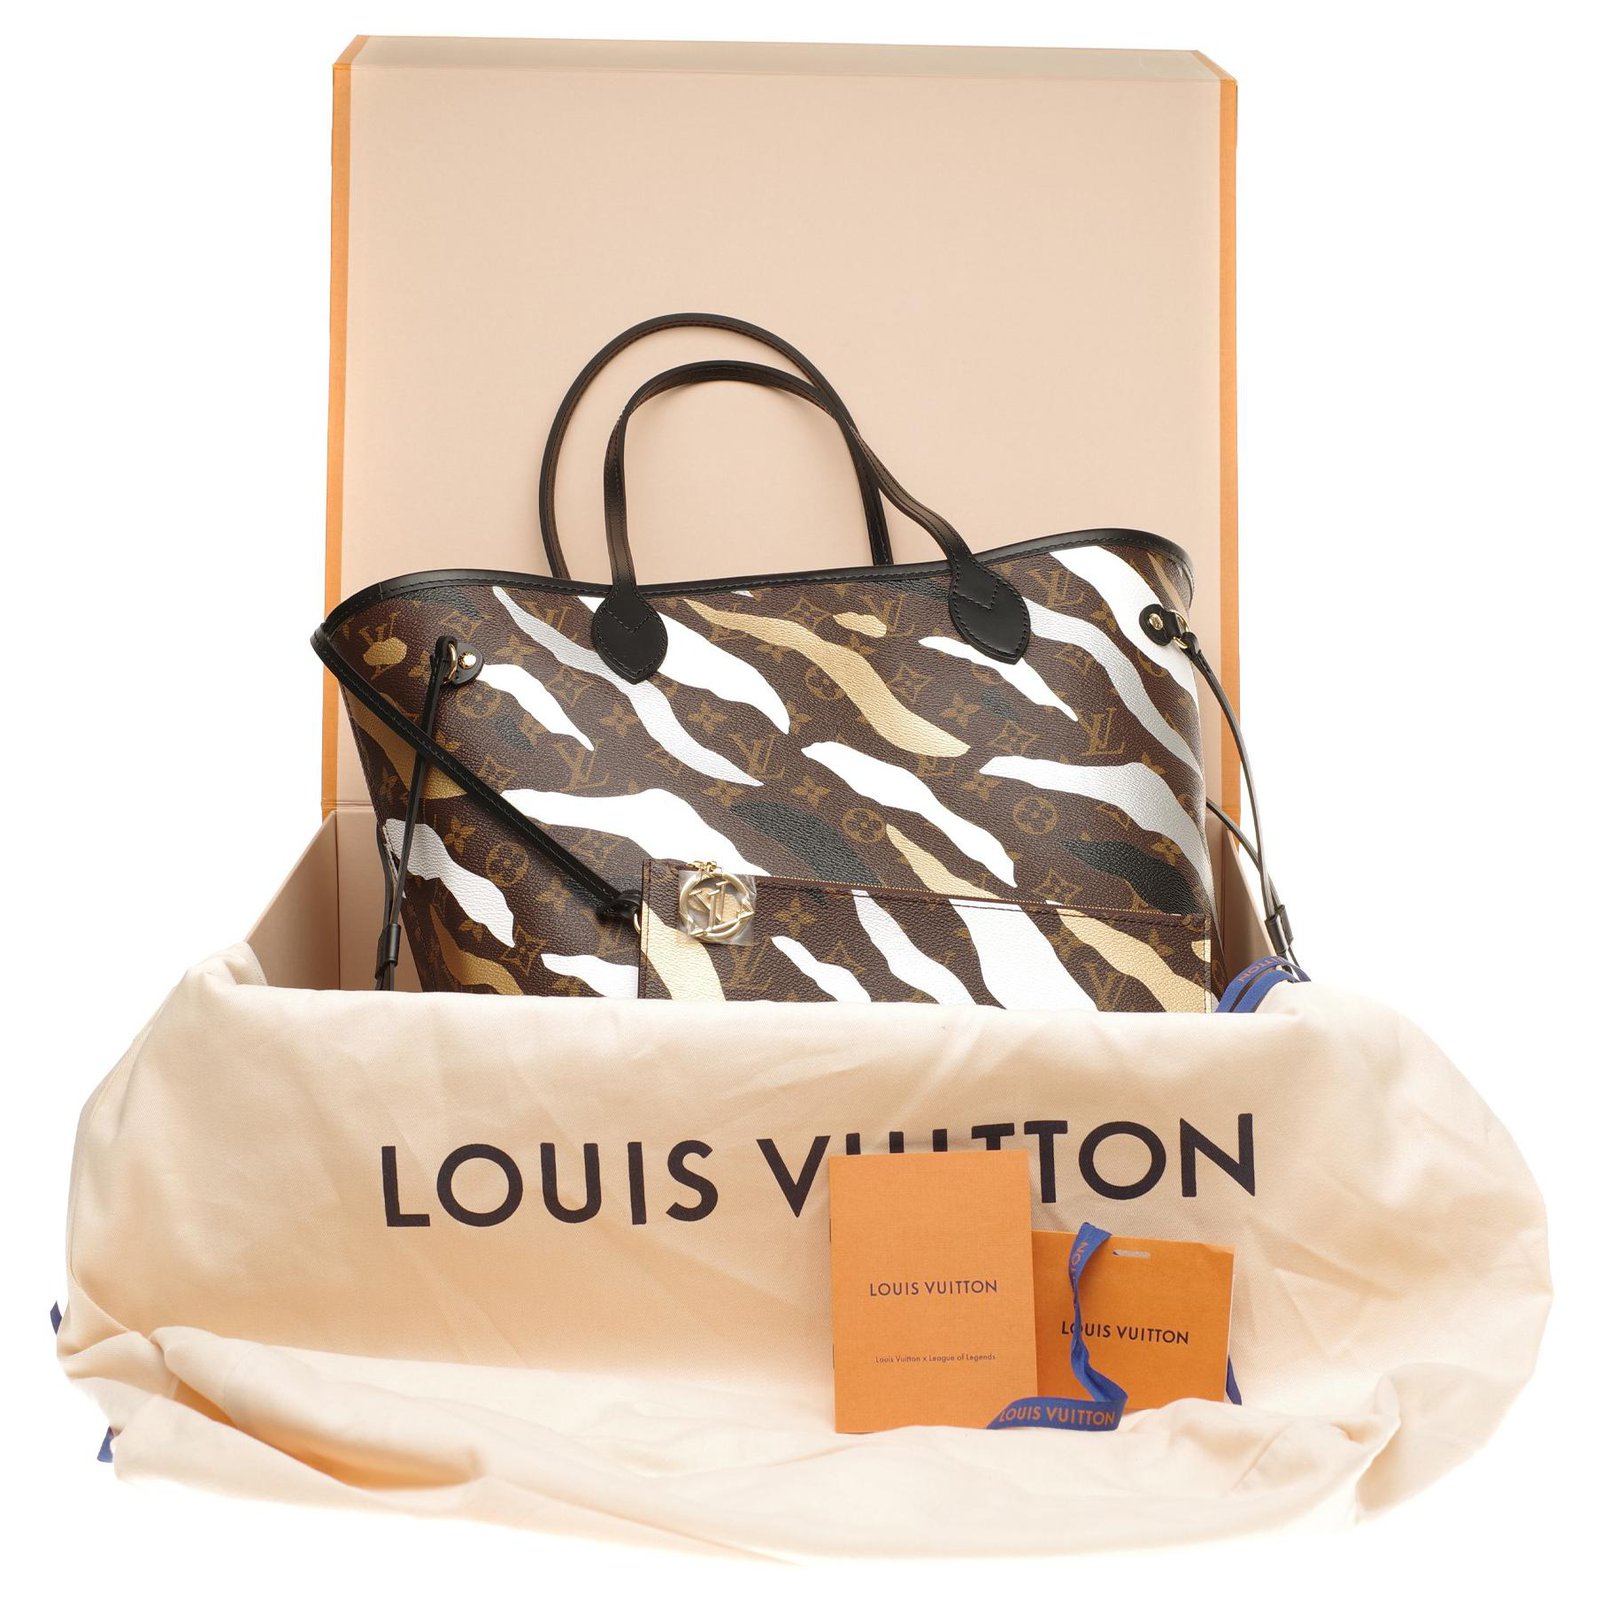 Louis Vuitton League Of Legends Collection Price List